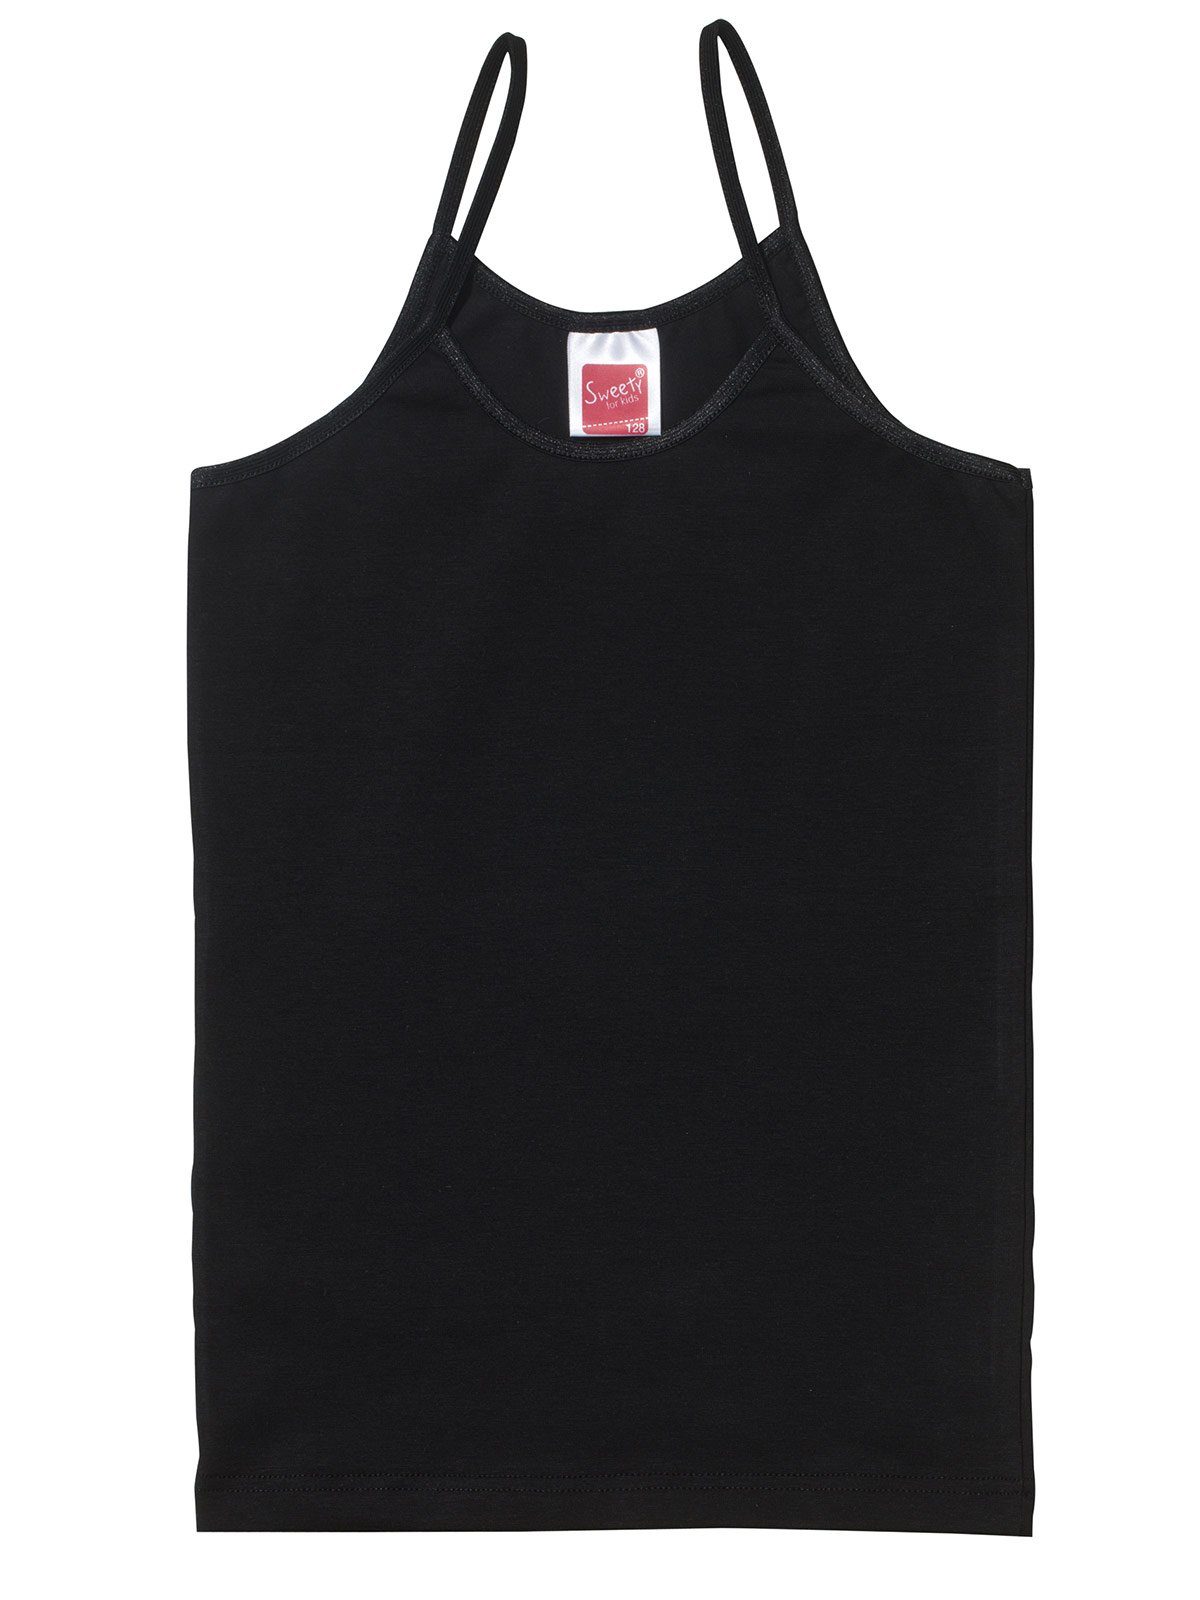 4er Trägerhemd Sweety Sparpack Mädchen Markenqualität (Spar-Set, Feinripp for Kids 4-St) Unterhemd schwarz hohe